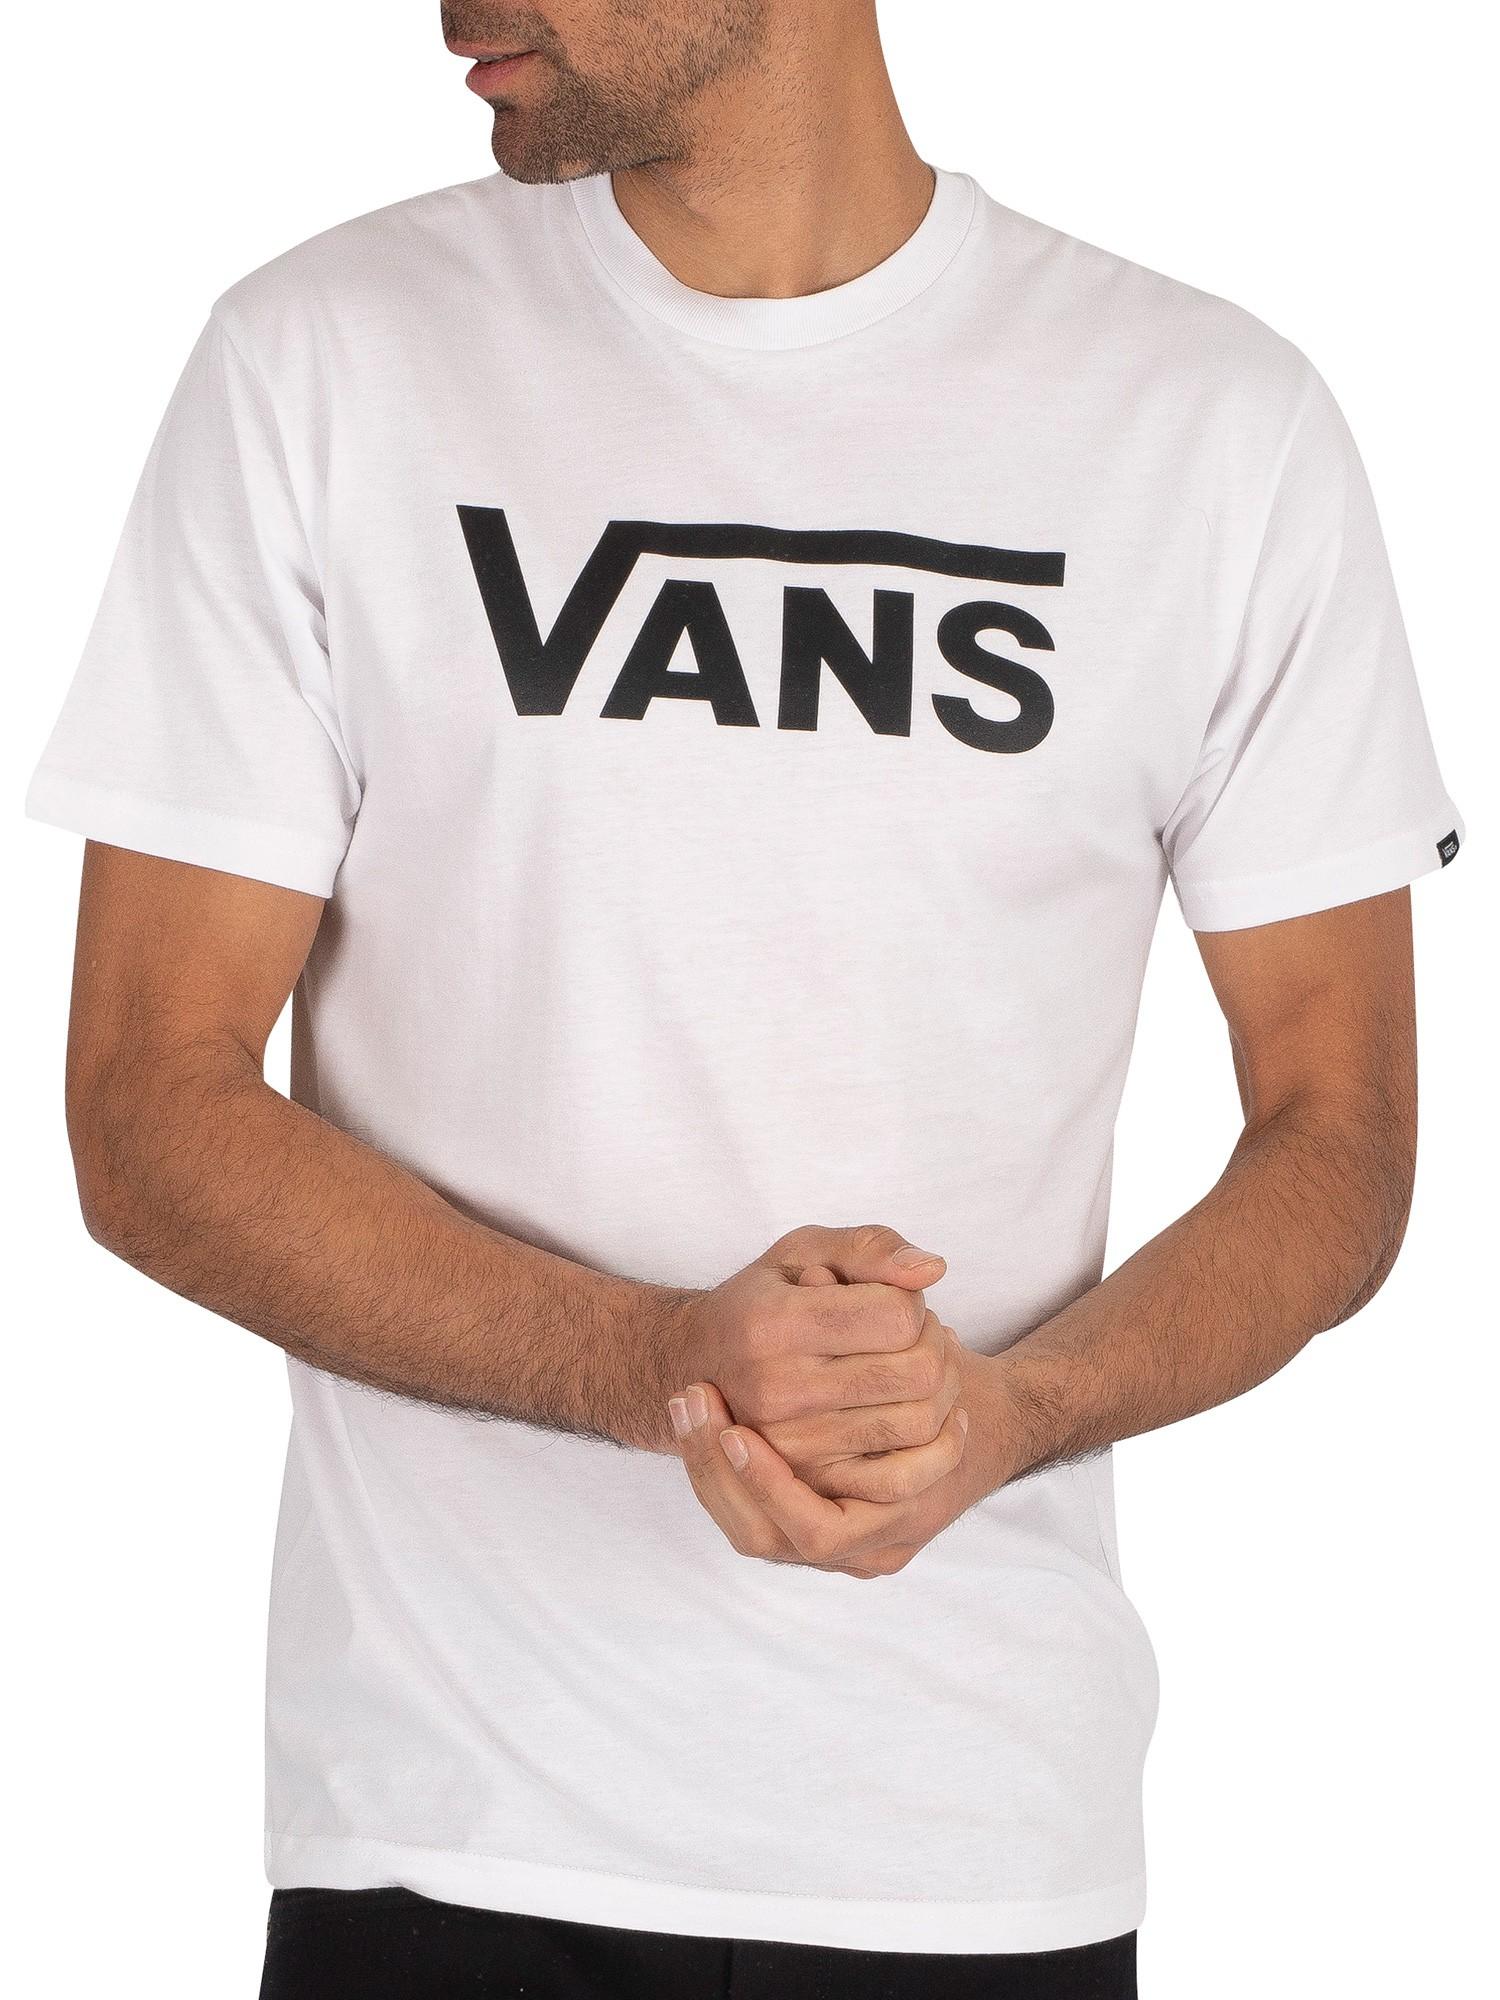 Vans Classic T-shirt in White/Black (White) for Men - Lyst